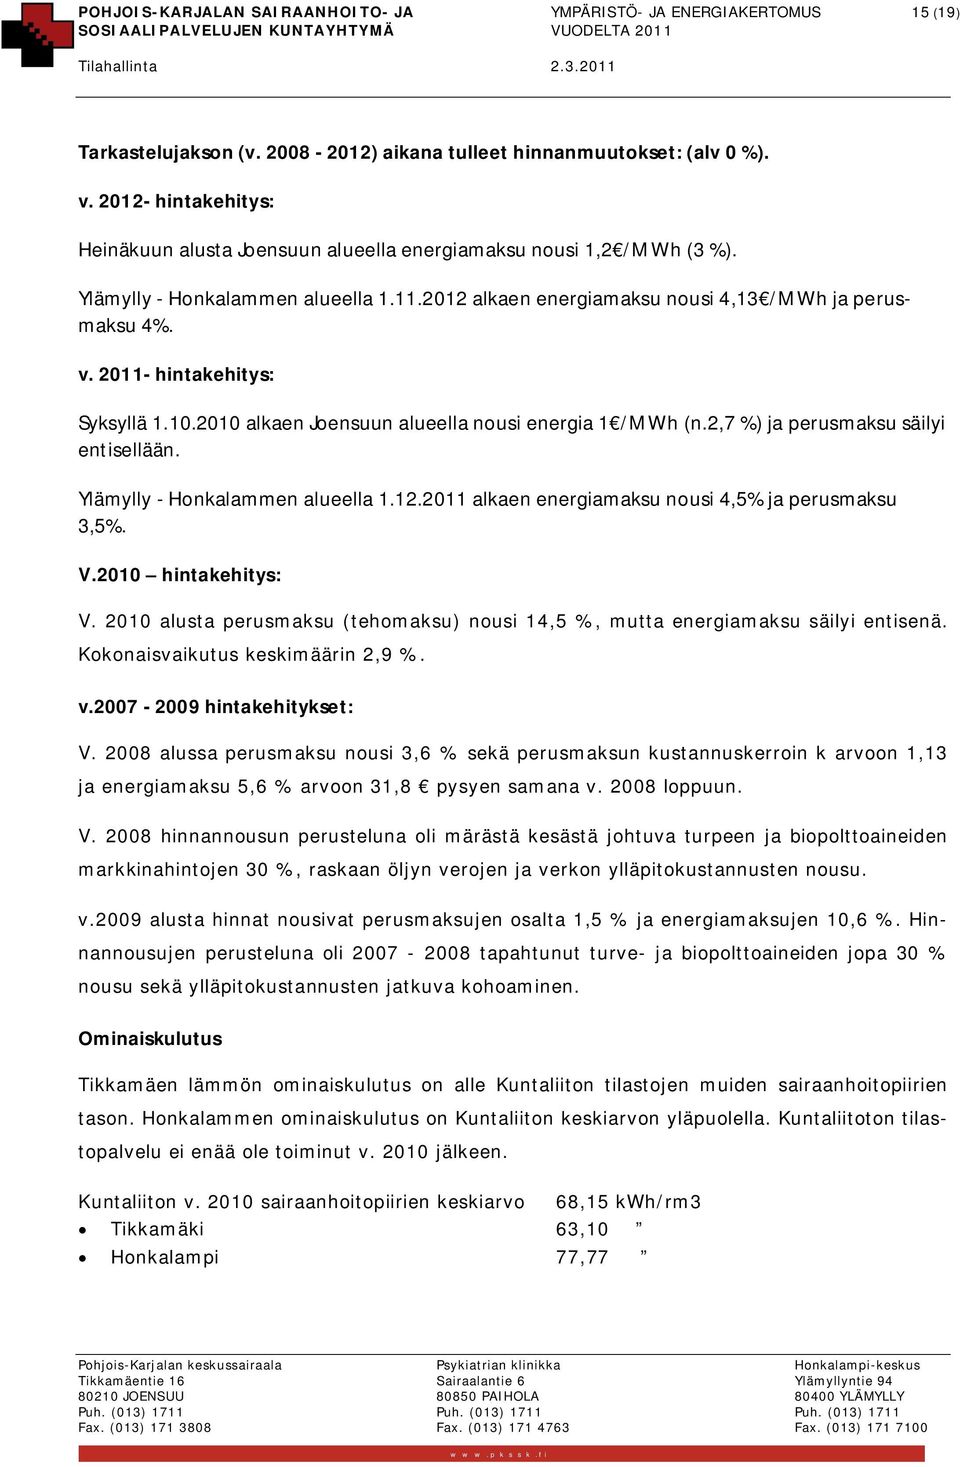 2011- hintakehitys: Syksyllä 1.10.2010 alkaen Joensuun alueella nousi energia 1 /MWh (n.2,7 %) ja perusmaksu säilyi entisellään. Ylämylly - Honkalammen alueella 1.12.